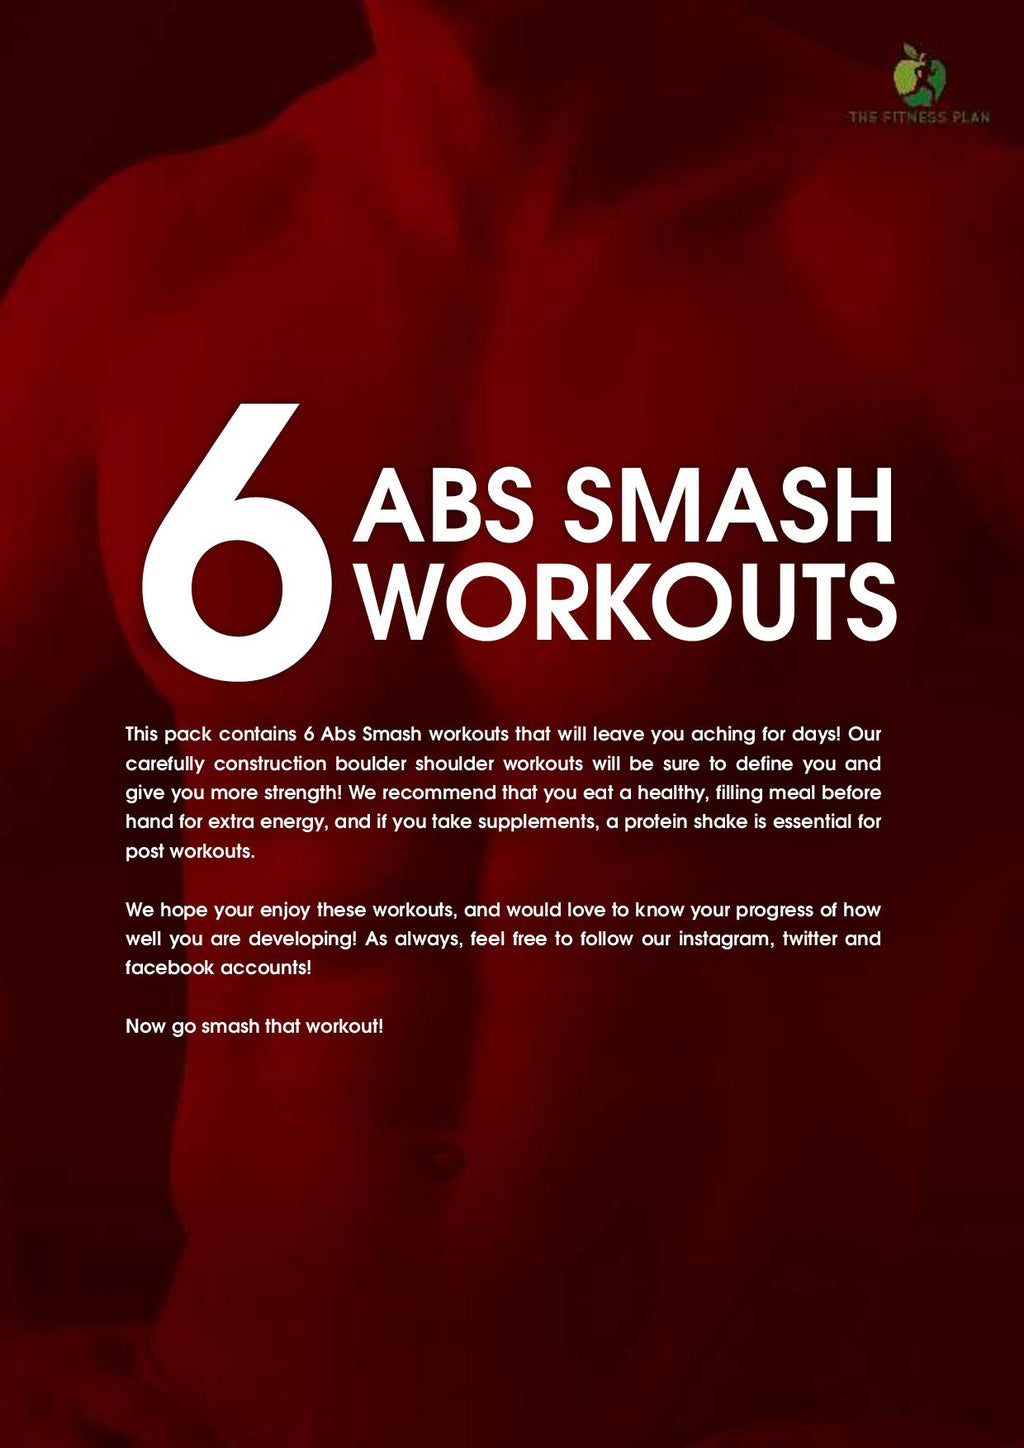 6 Ab Smash Workouts